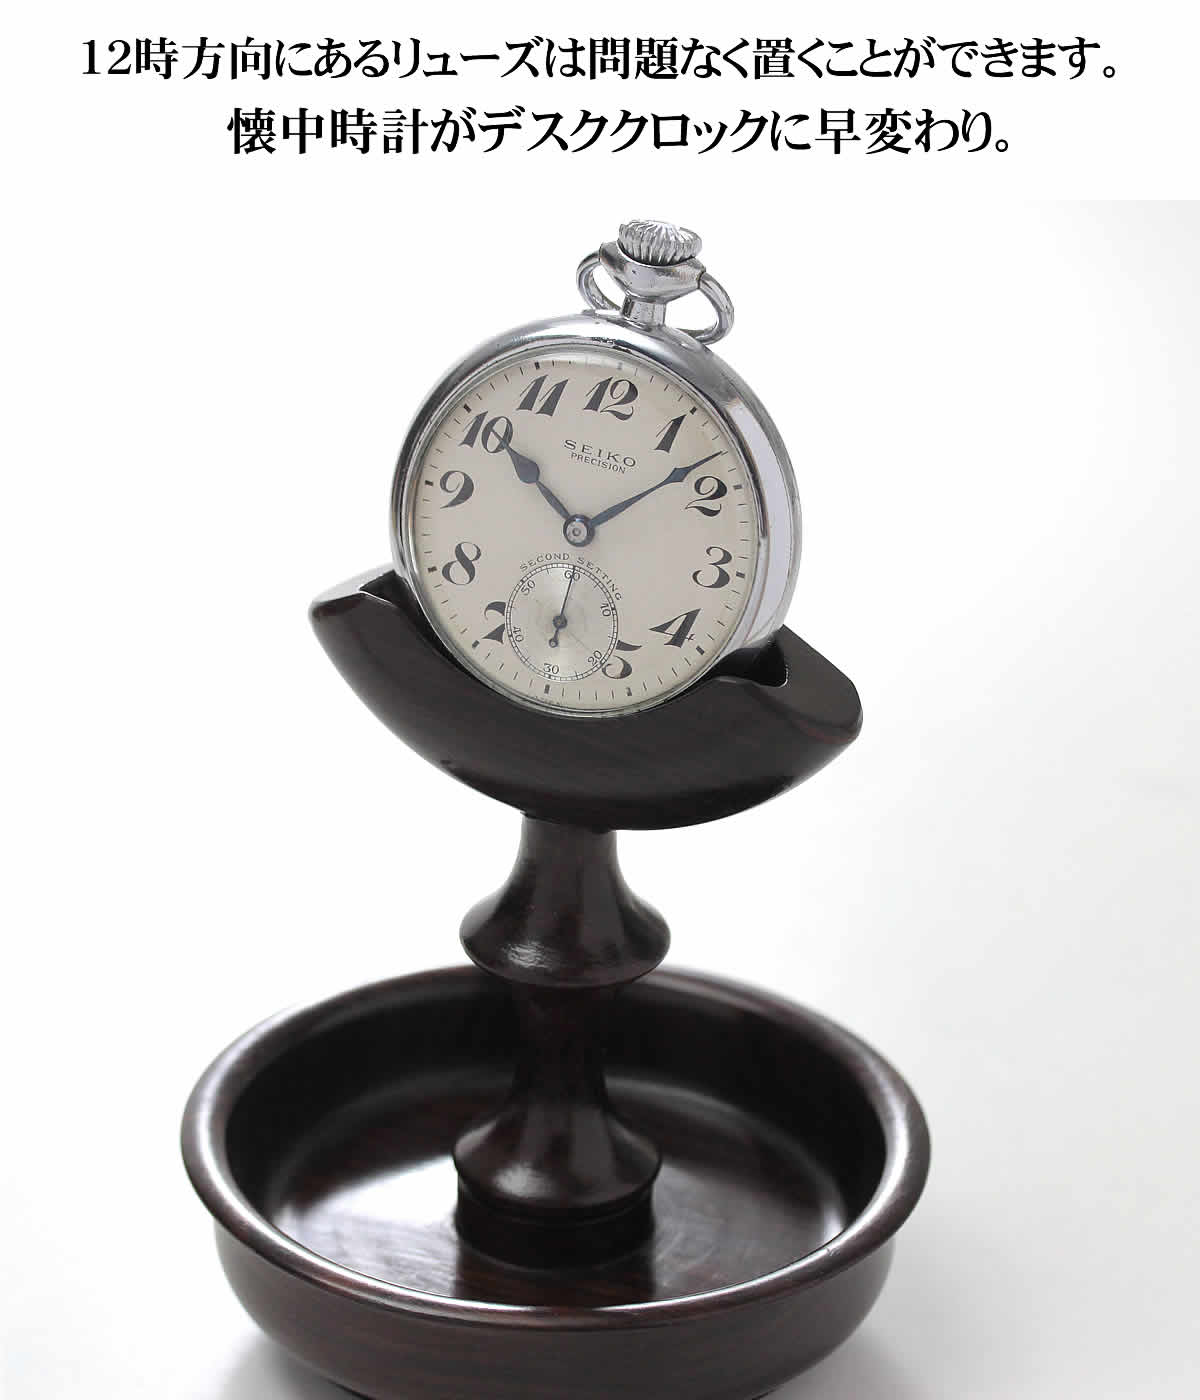 ☆新作入荷☆新品 懐中時計スタンド 角度可変式横蓋懐中時計